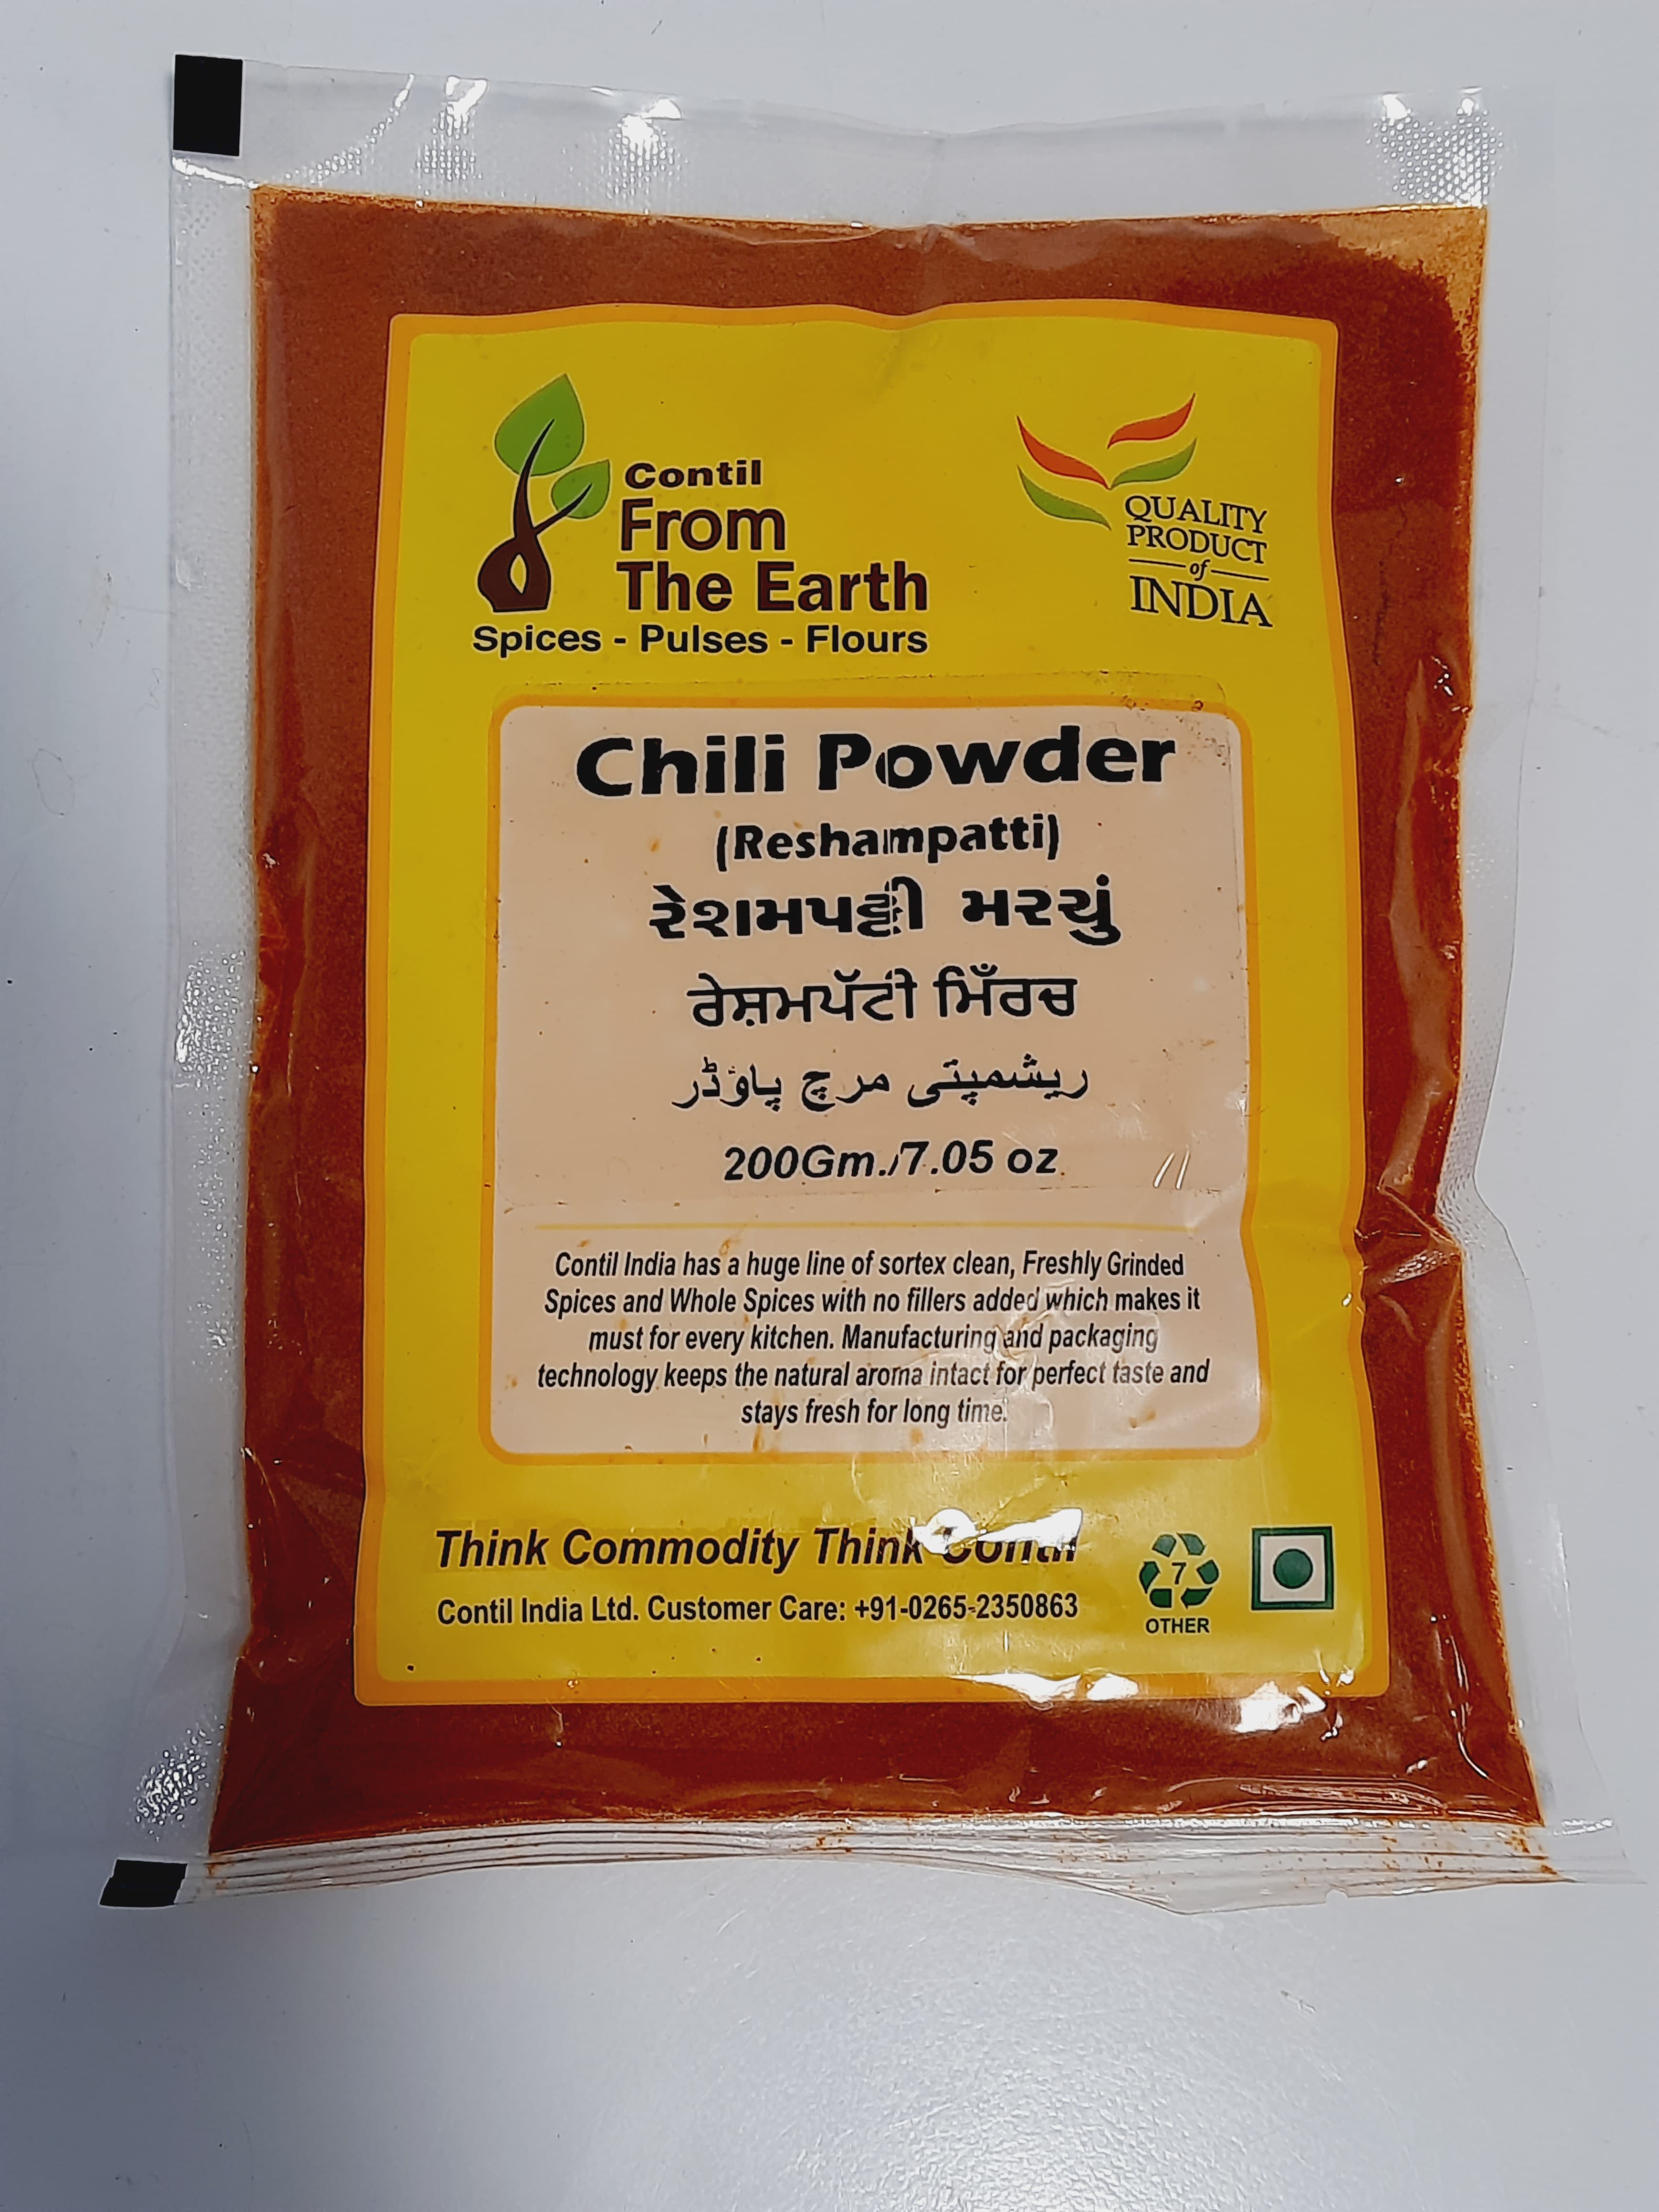 From the Earth - Chilli Powder Reshampatti 200g